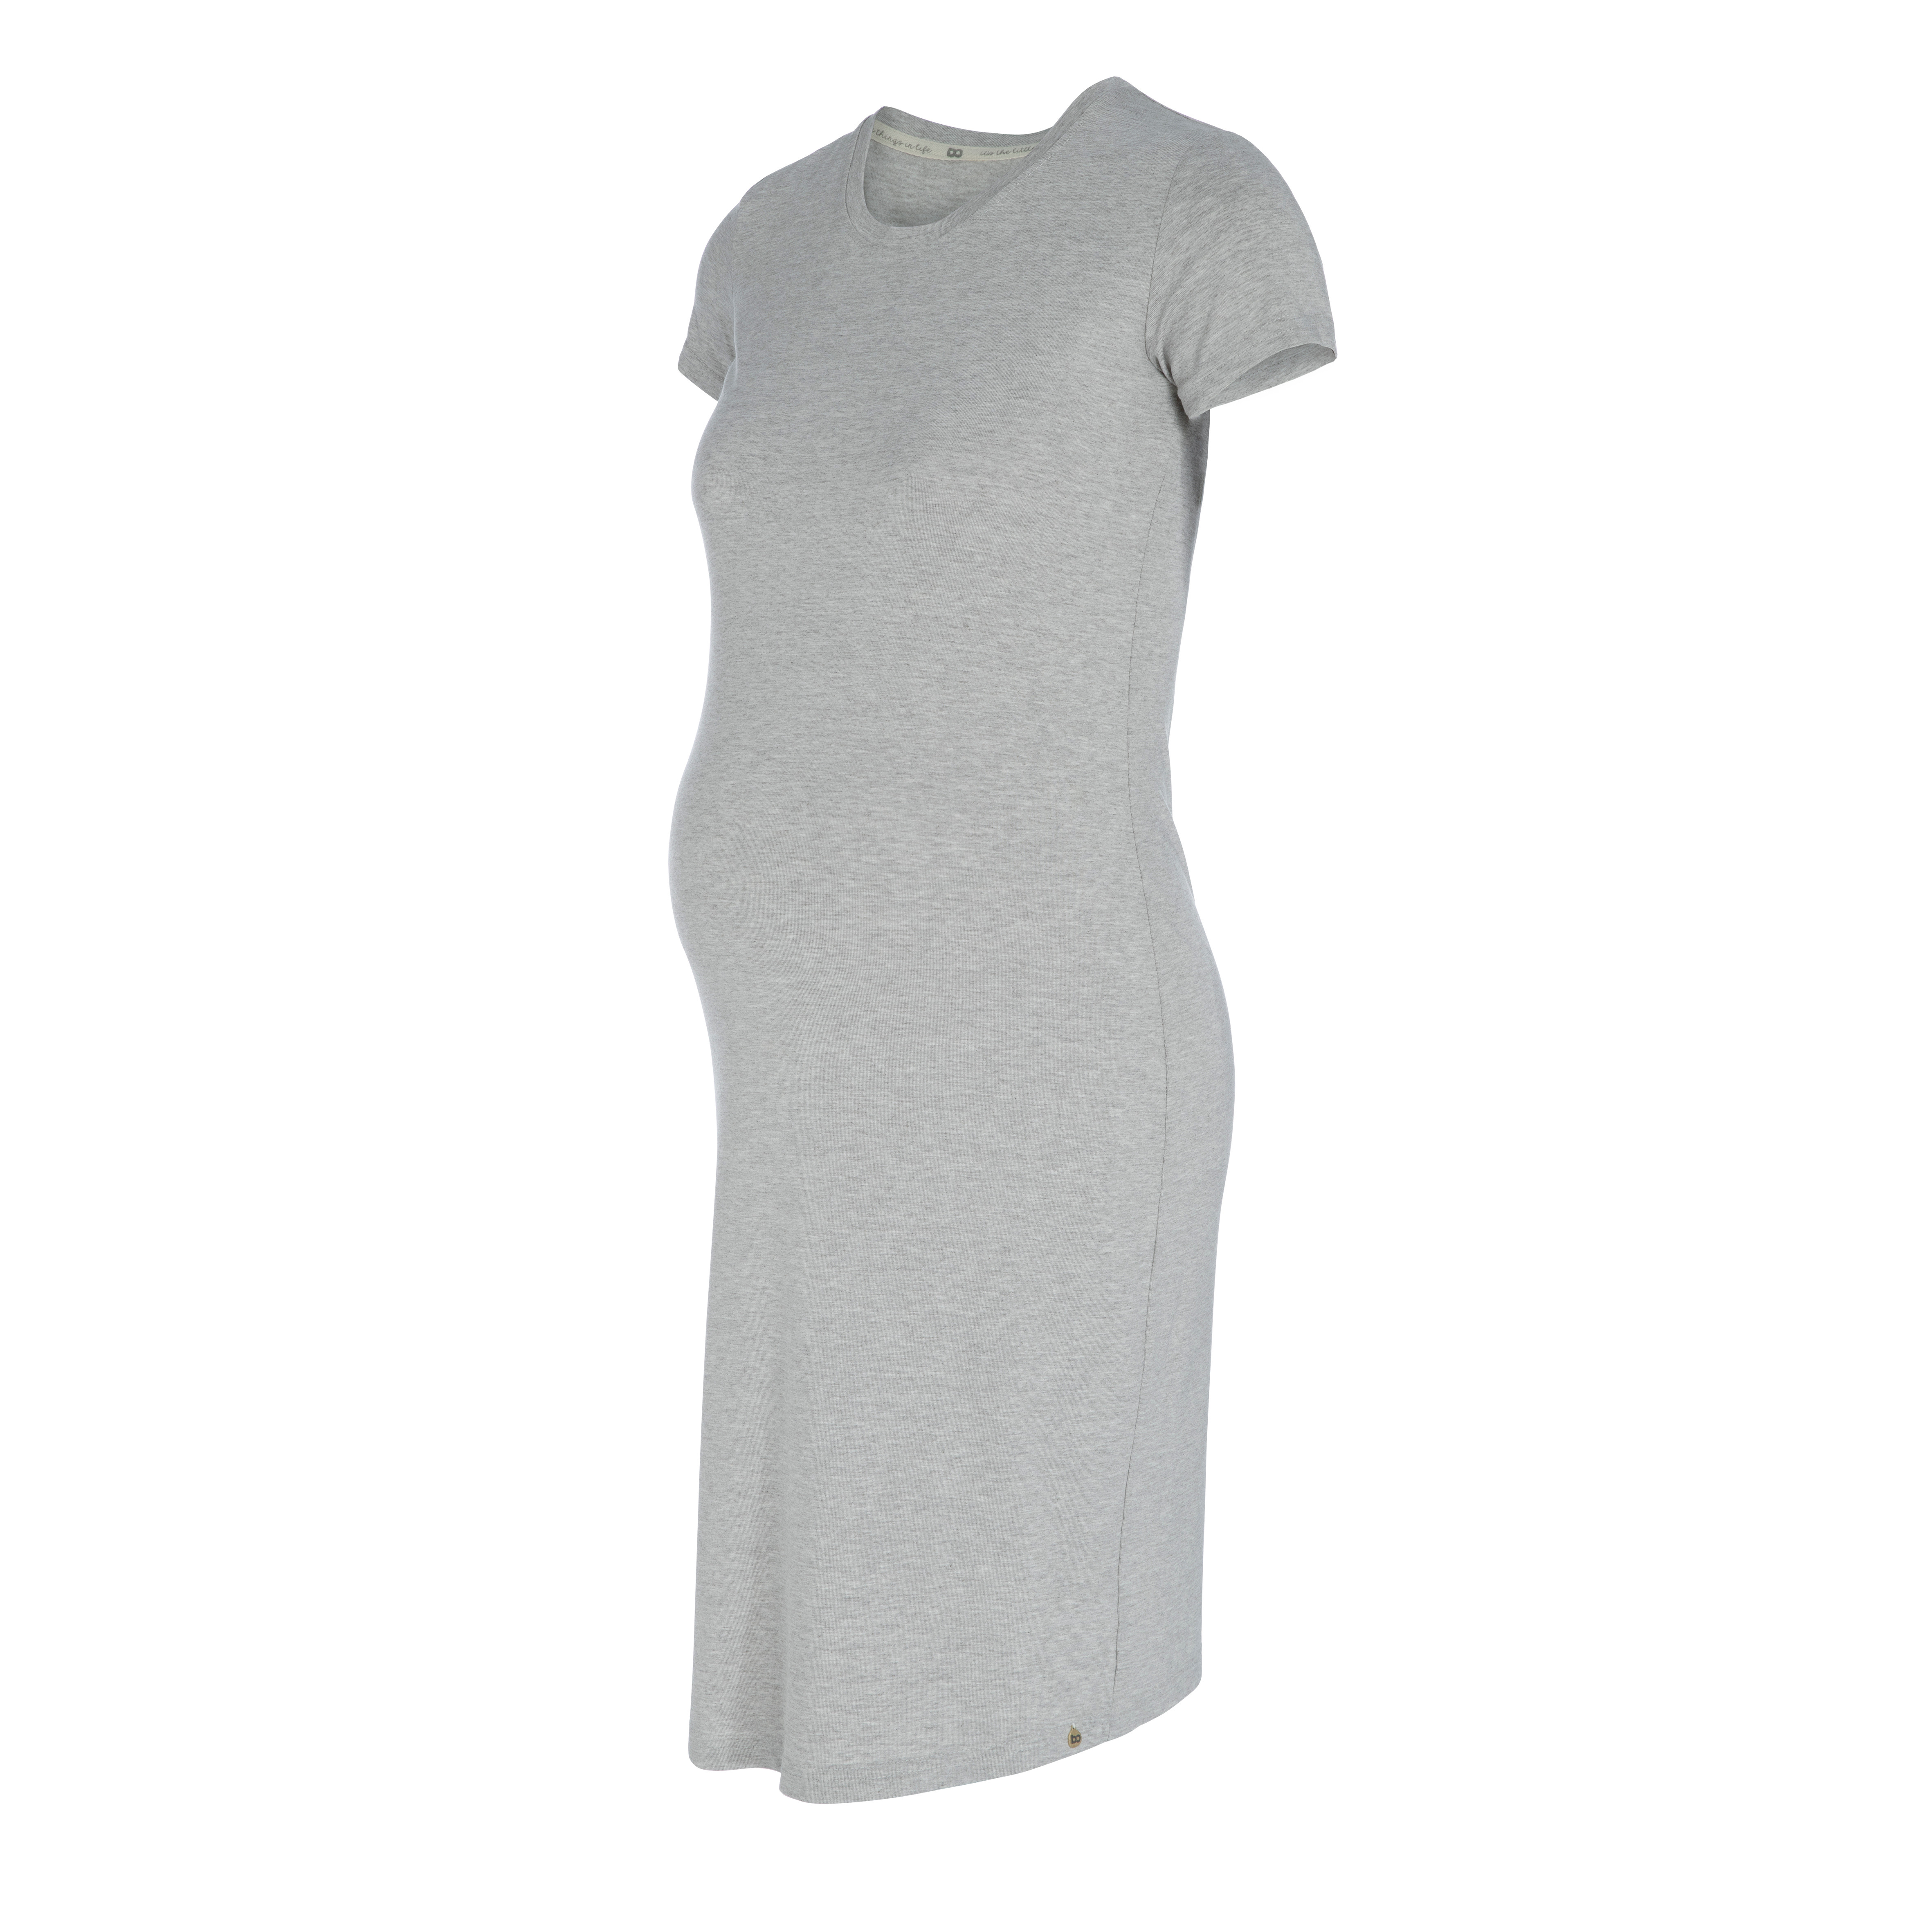 Maternity dress Glow dusty grey - S